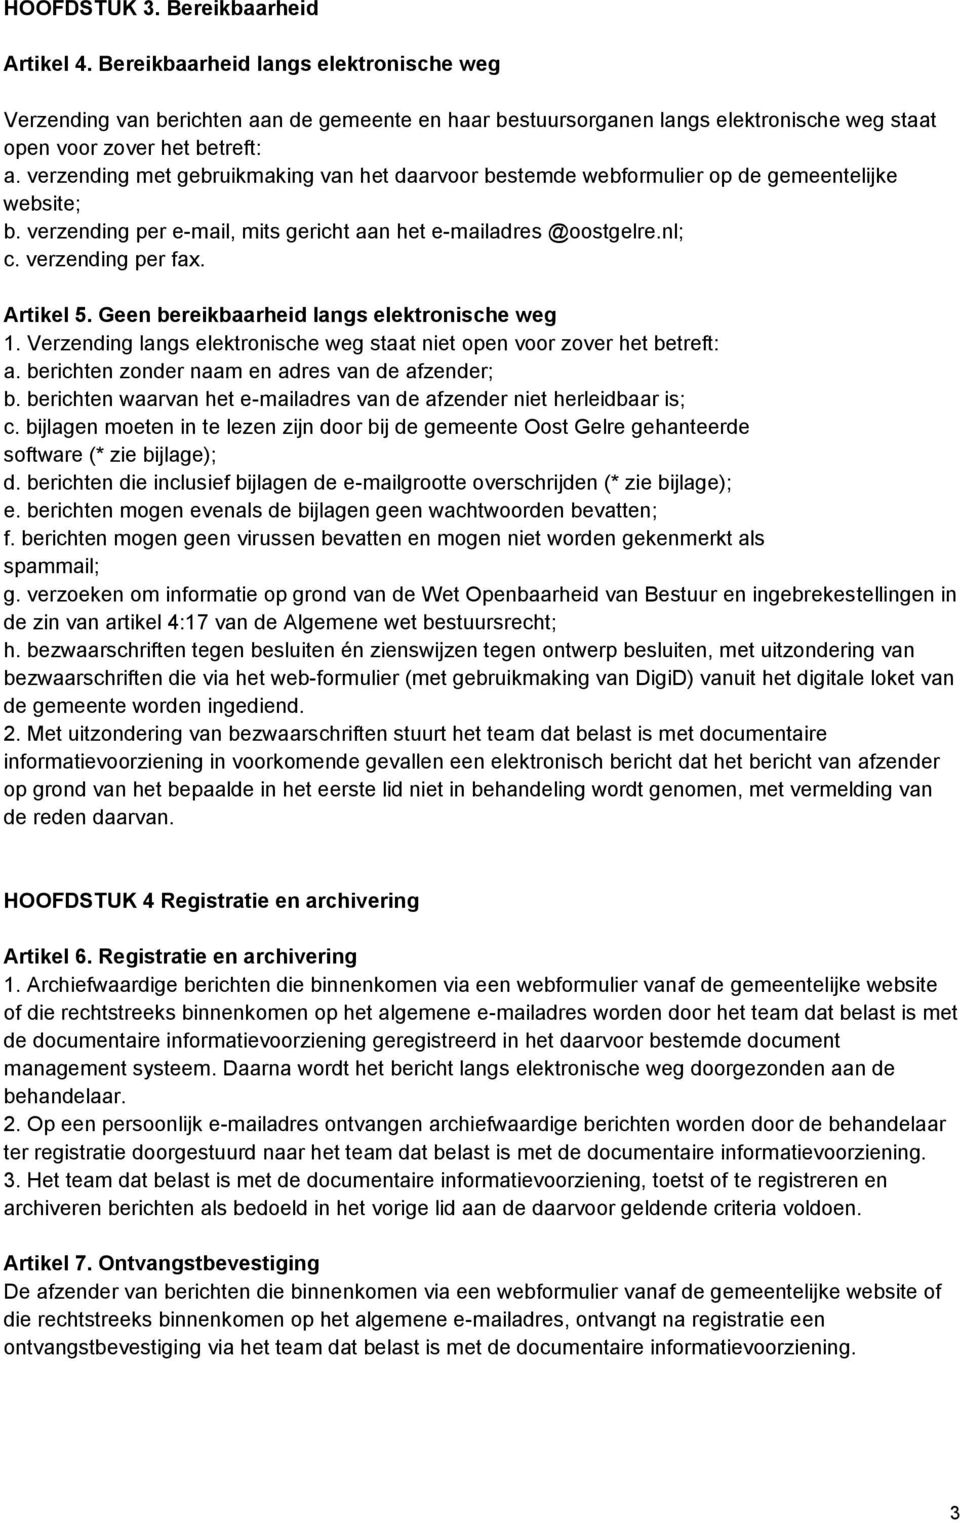 verzending met gebruikmaking van het daarvoor bestemde webformulier op de gemeentelijke website; b. verzending per e-mail, mits gericht aan het e-mailadres @oostgelre.nl; c. verzending per fax.